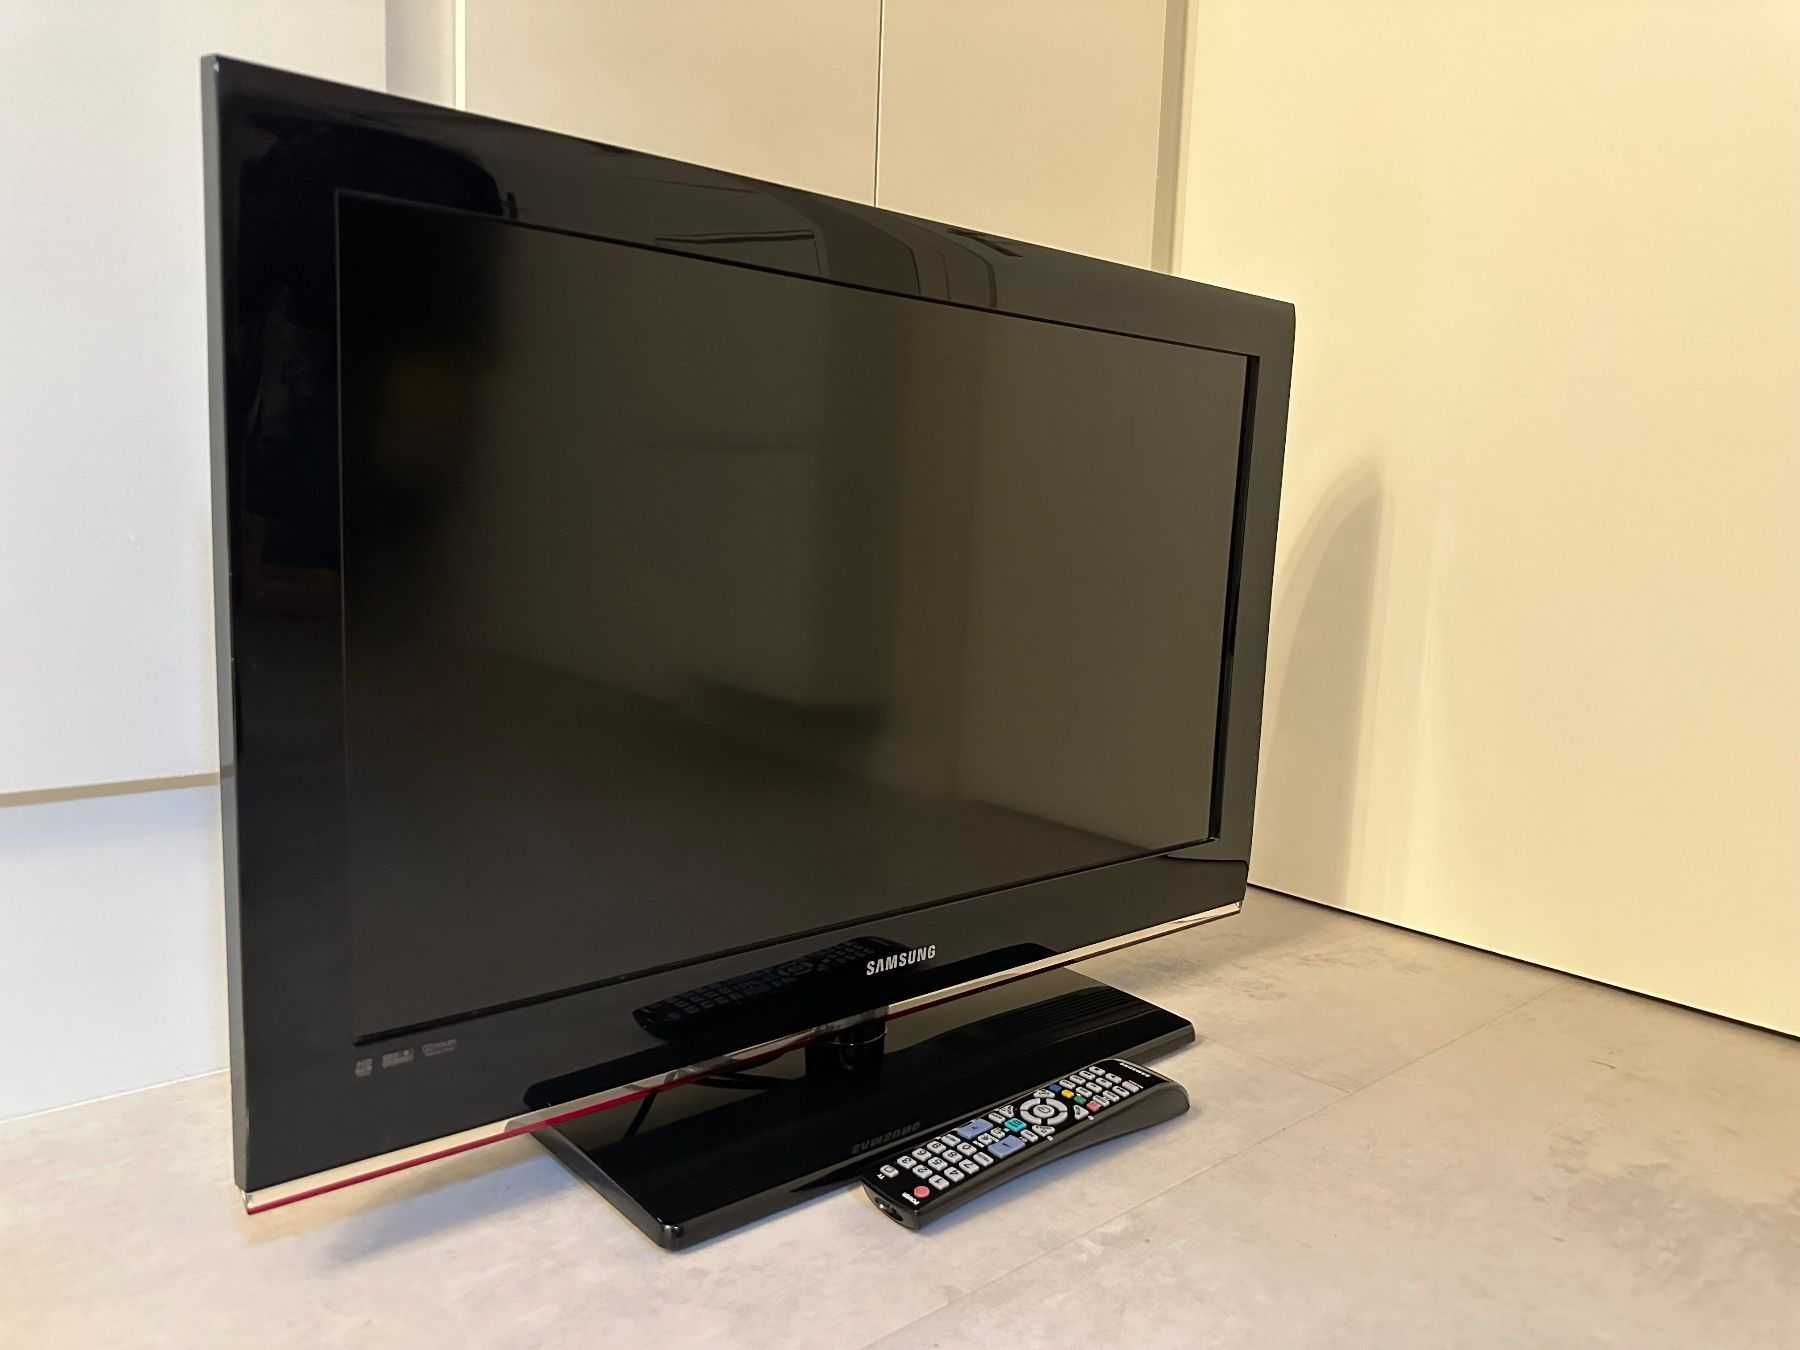 Vand televizor SAMSUNG cu telecomanda stand si cablu alimentare